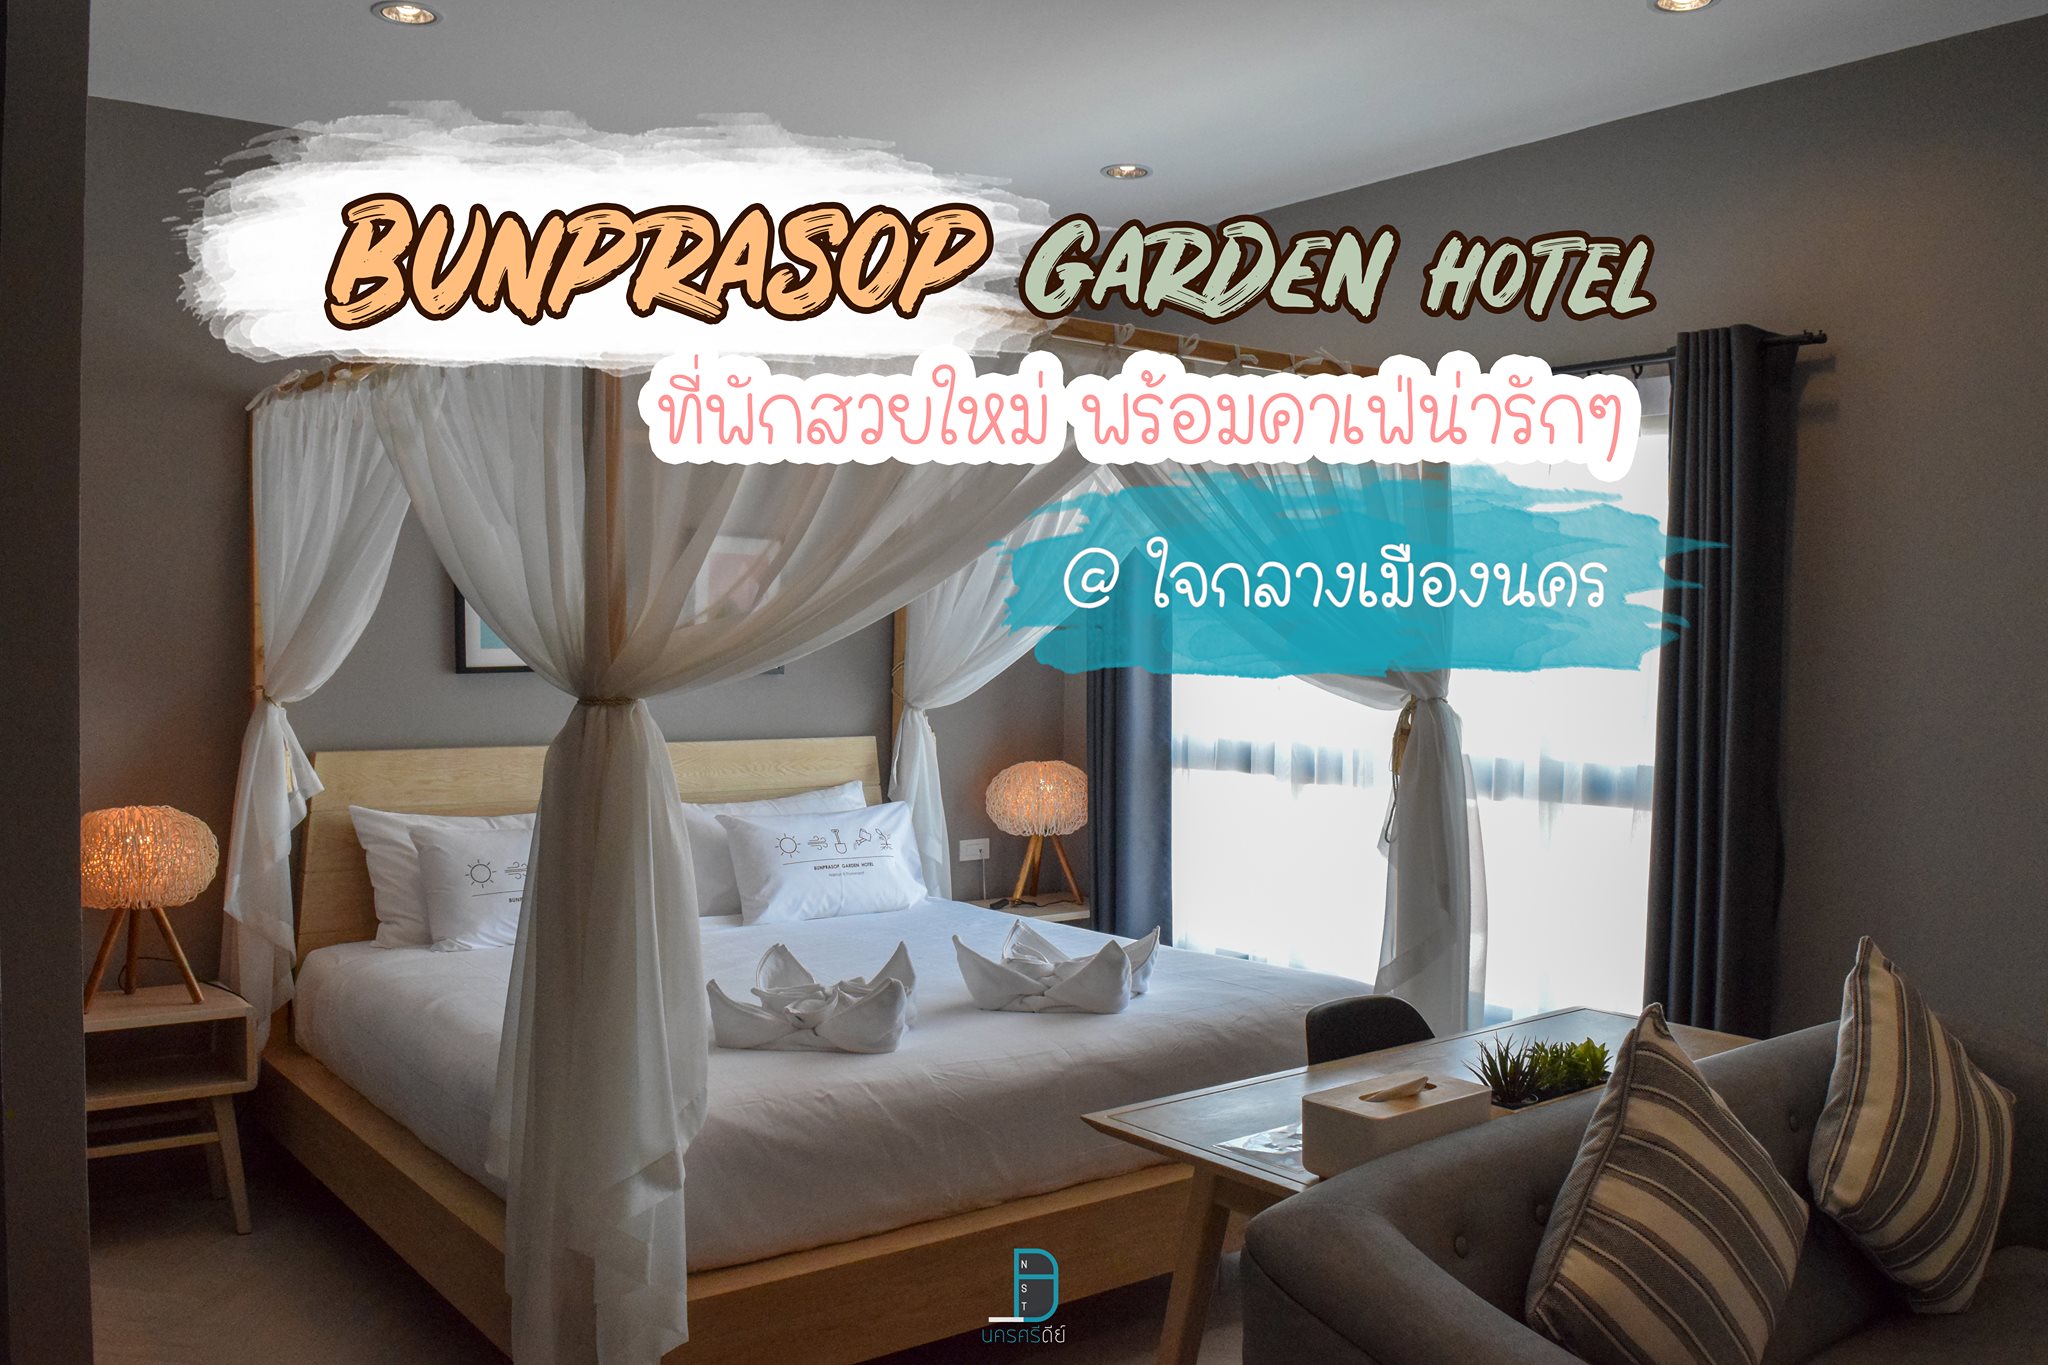 โรงแรมบุญประสพ Bunprasop Garden Hotel ที่พักสวยใหม่ ใจกลางเมืองนคร พร้อมคาเฟ่น่ารักๆนั่งชิวๆ